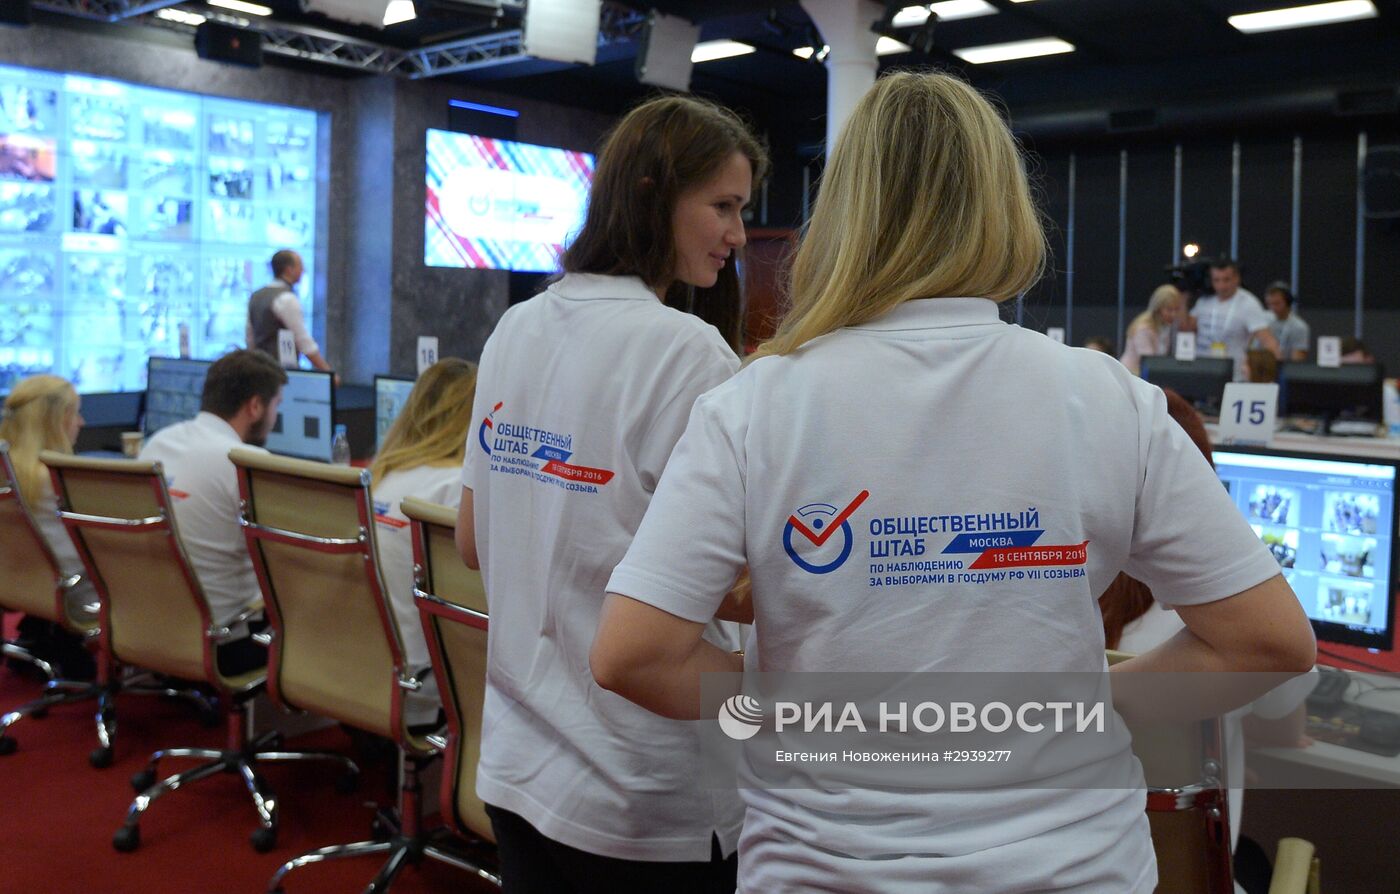 Общественный штаб по наблюдению за выборами в Госдуму РФ